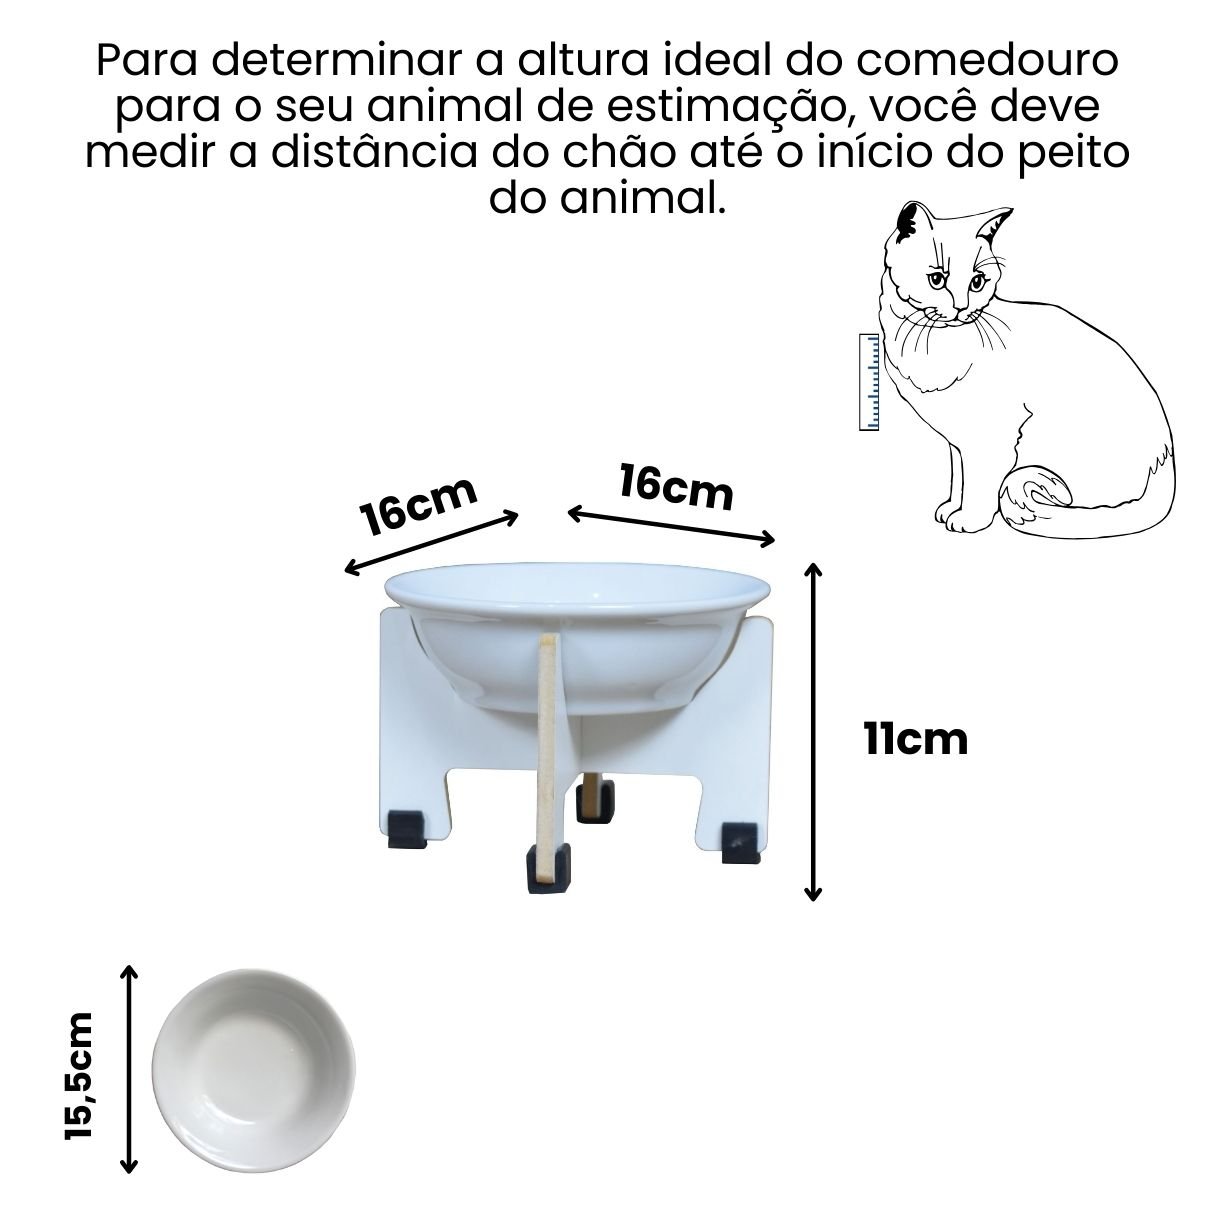 Comedouro Elevado Gato Cachorro Pet Mdf Modelo Torre:11cm/porcelana - 2